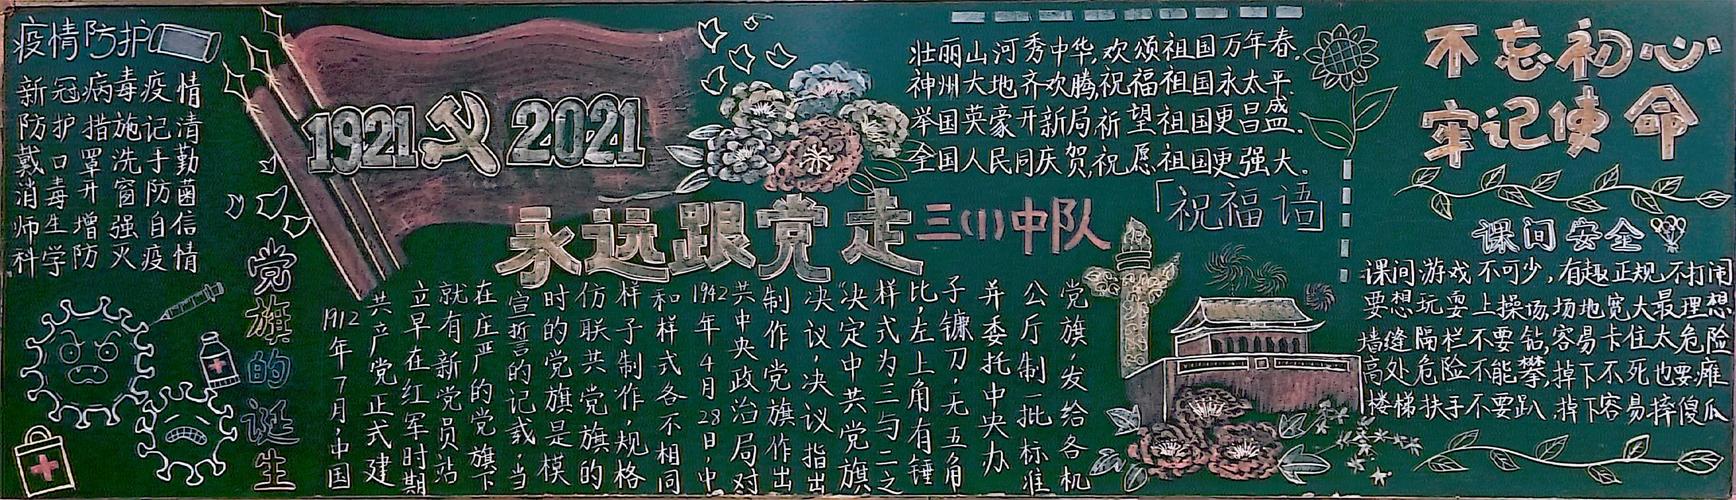 争做新时代接班人---徐州市西朱小学庆建党100周年黑板报评比活动